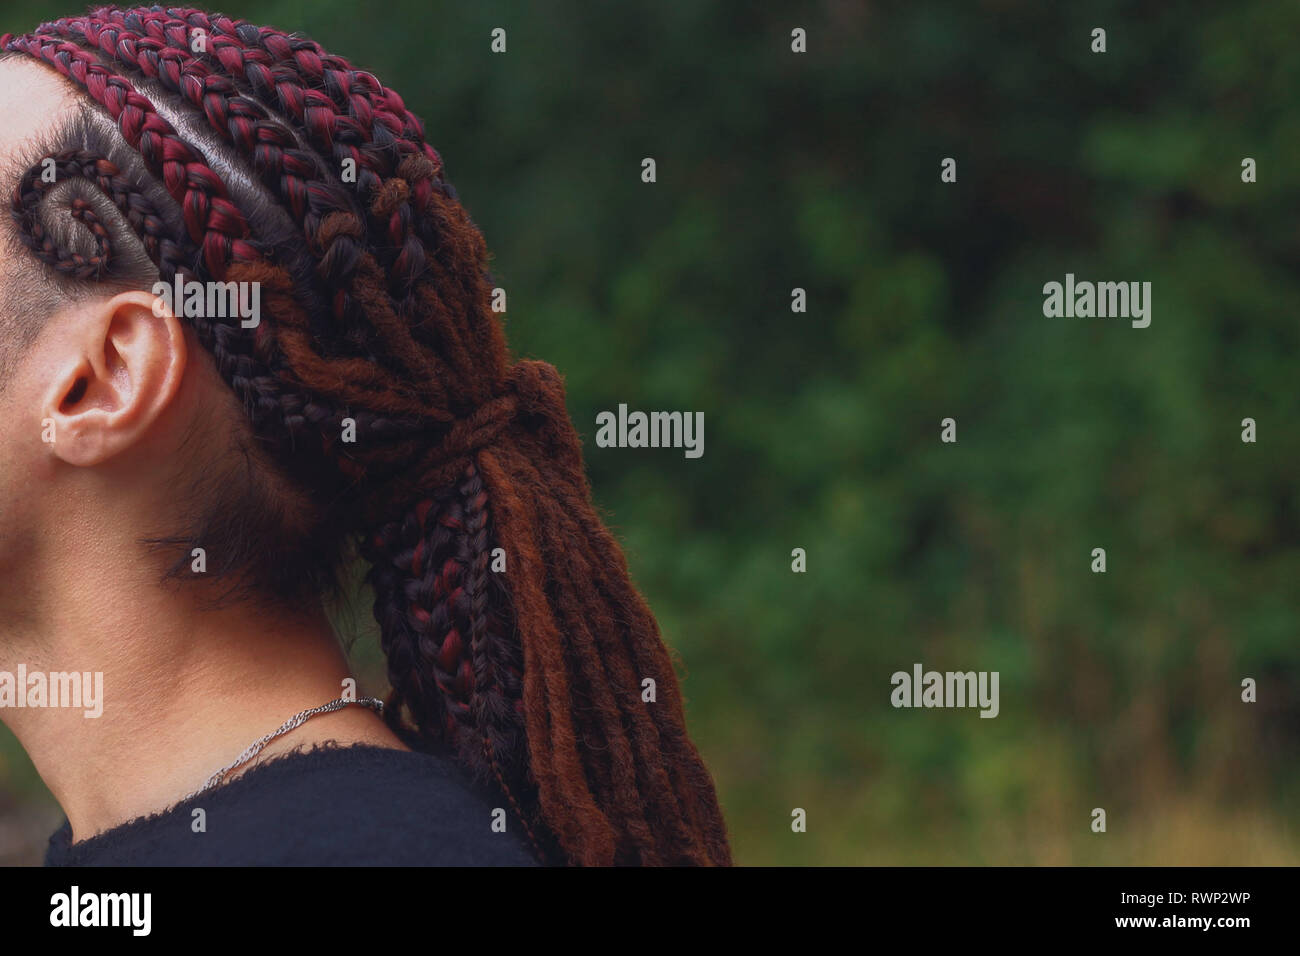 Ethnische Frisur Manner Dreadlocks Auf Dem Hintergrund Der Natur Stockfotografie Alamy